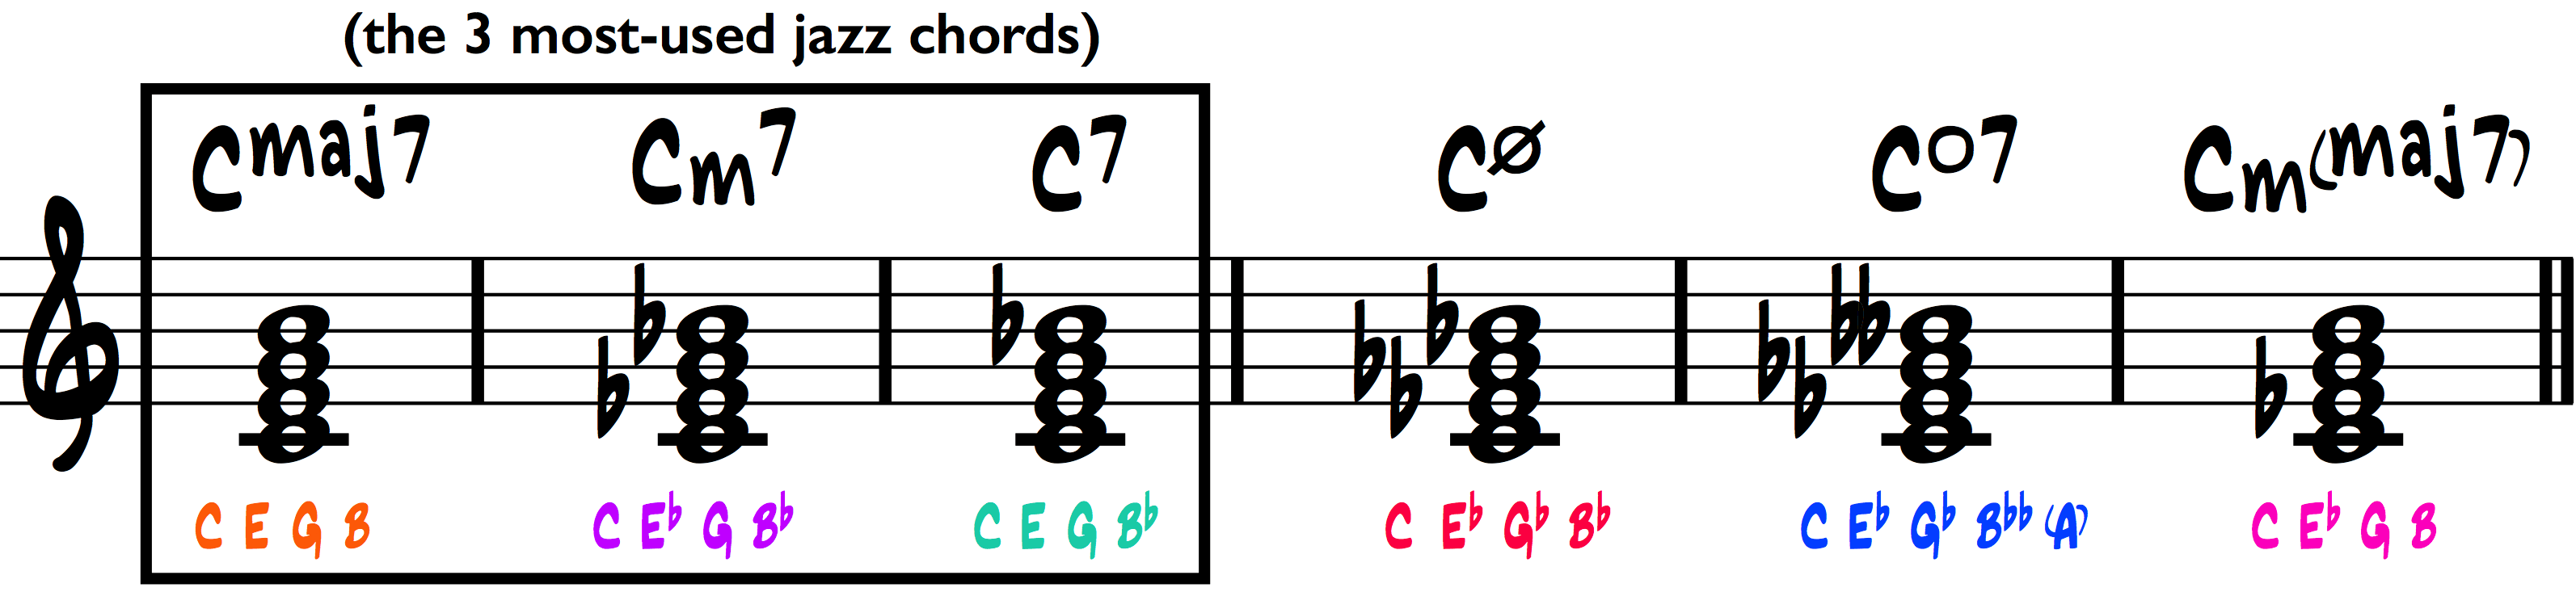 music notation symbols explained